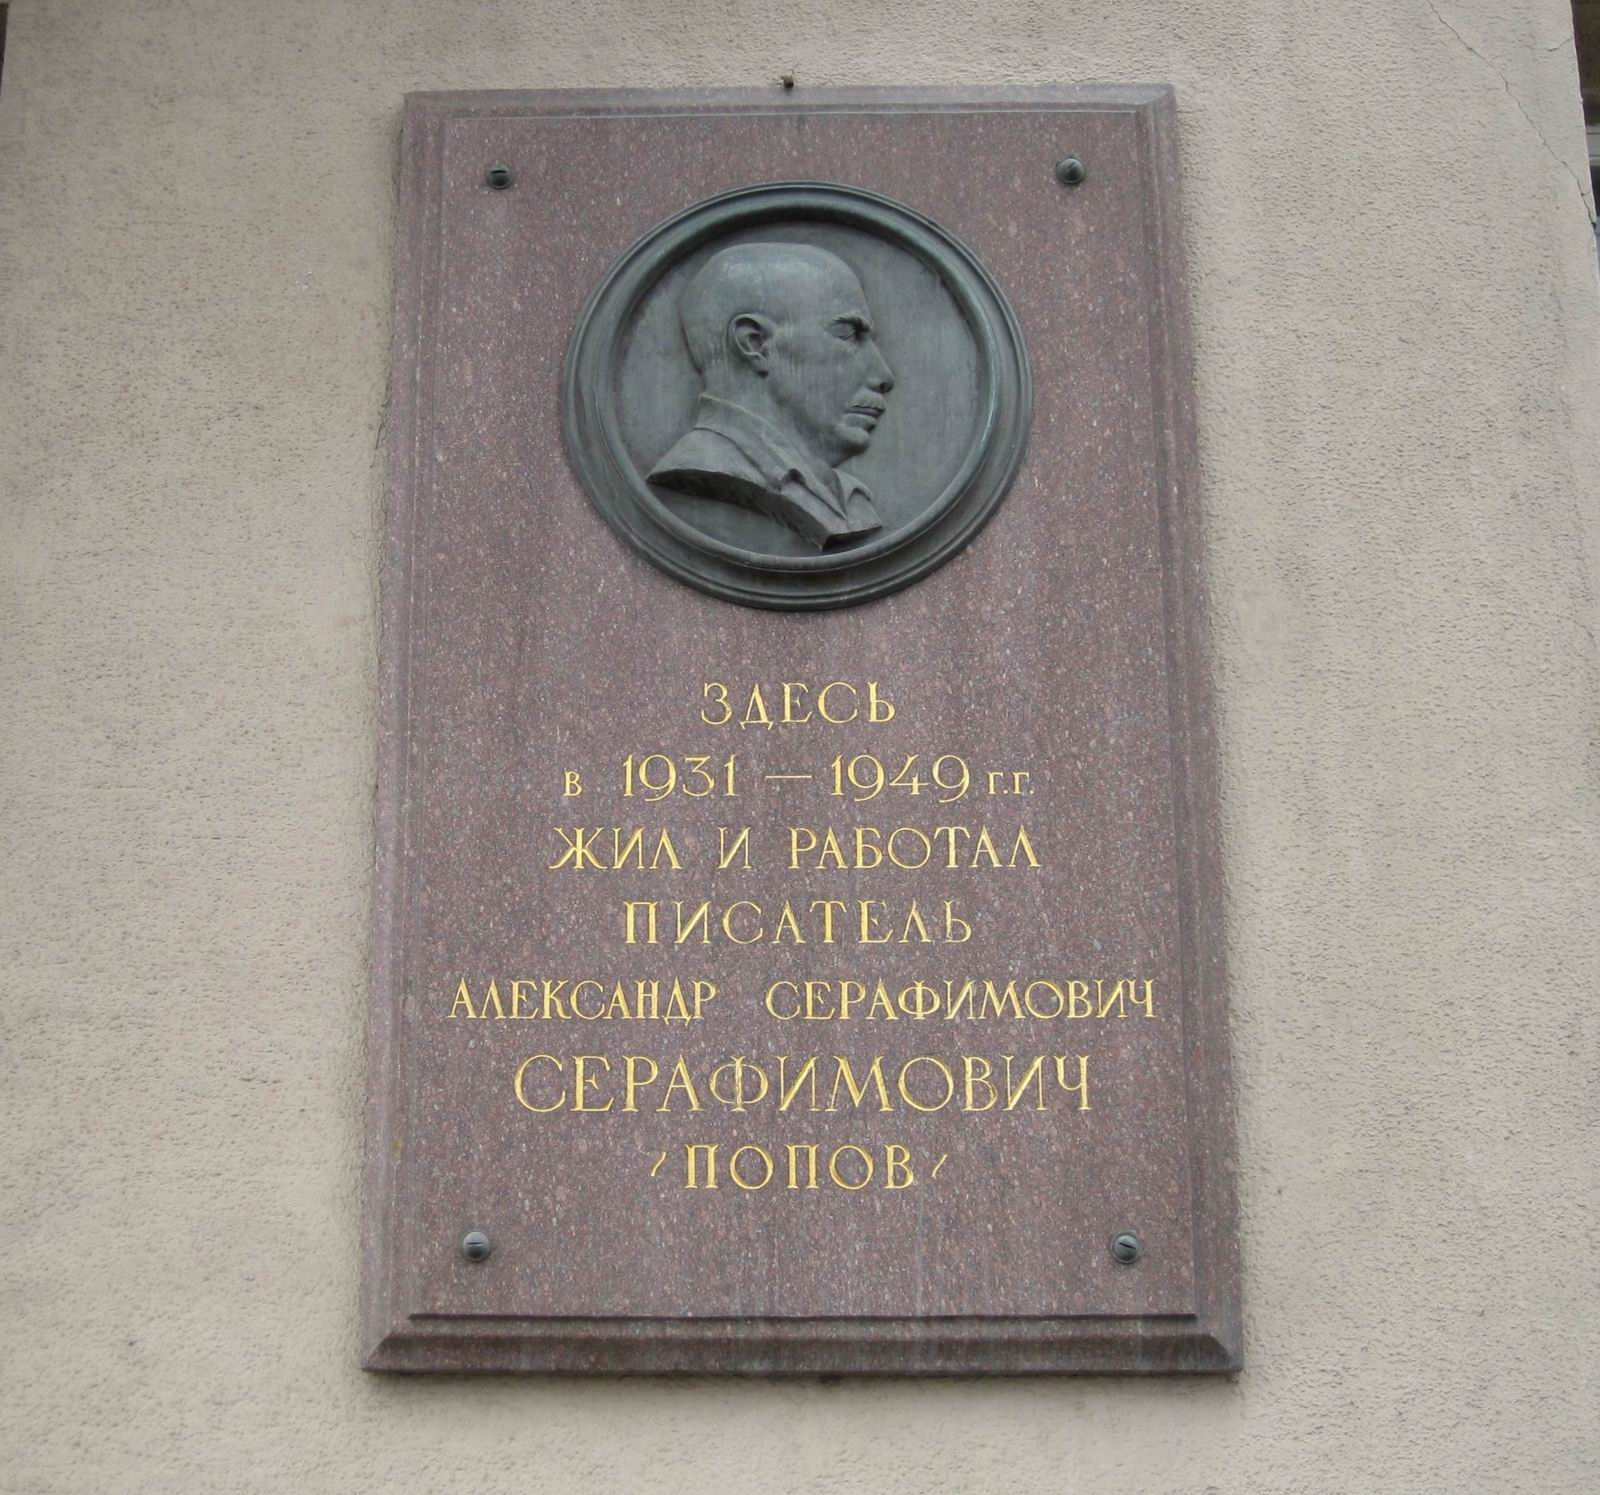 Мемориальная доска Серафимовичу А.С. (1863-1949), ск. М.Л.Петрова, на улице Серафимовича, дом 2, открыта в январе 1956.